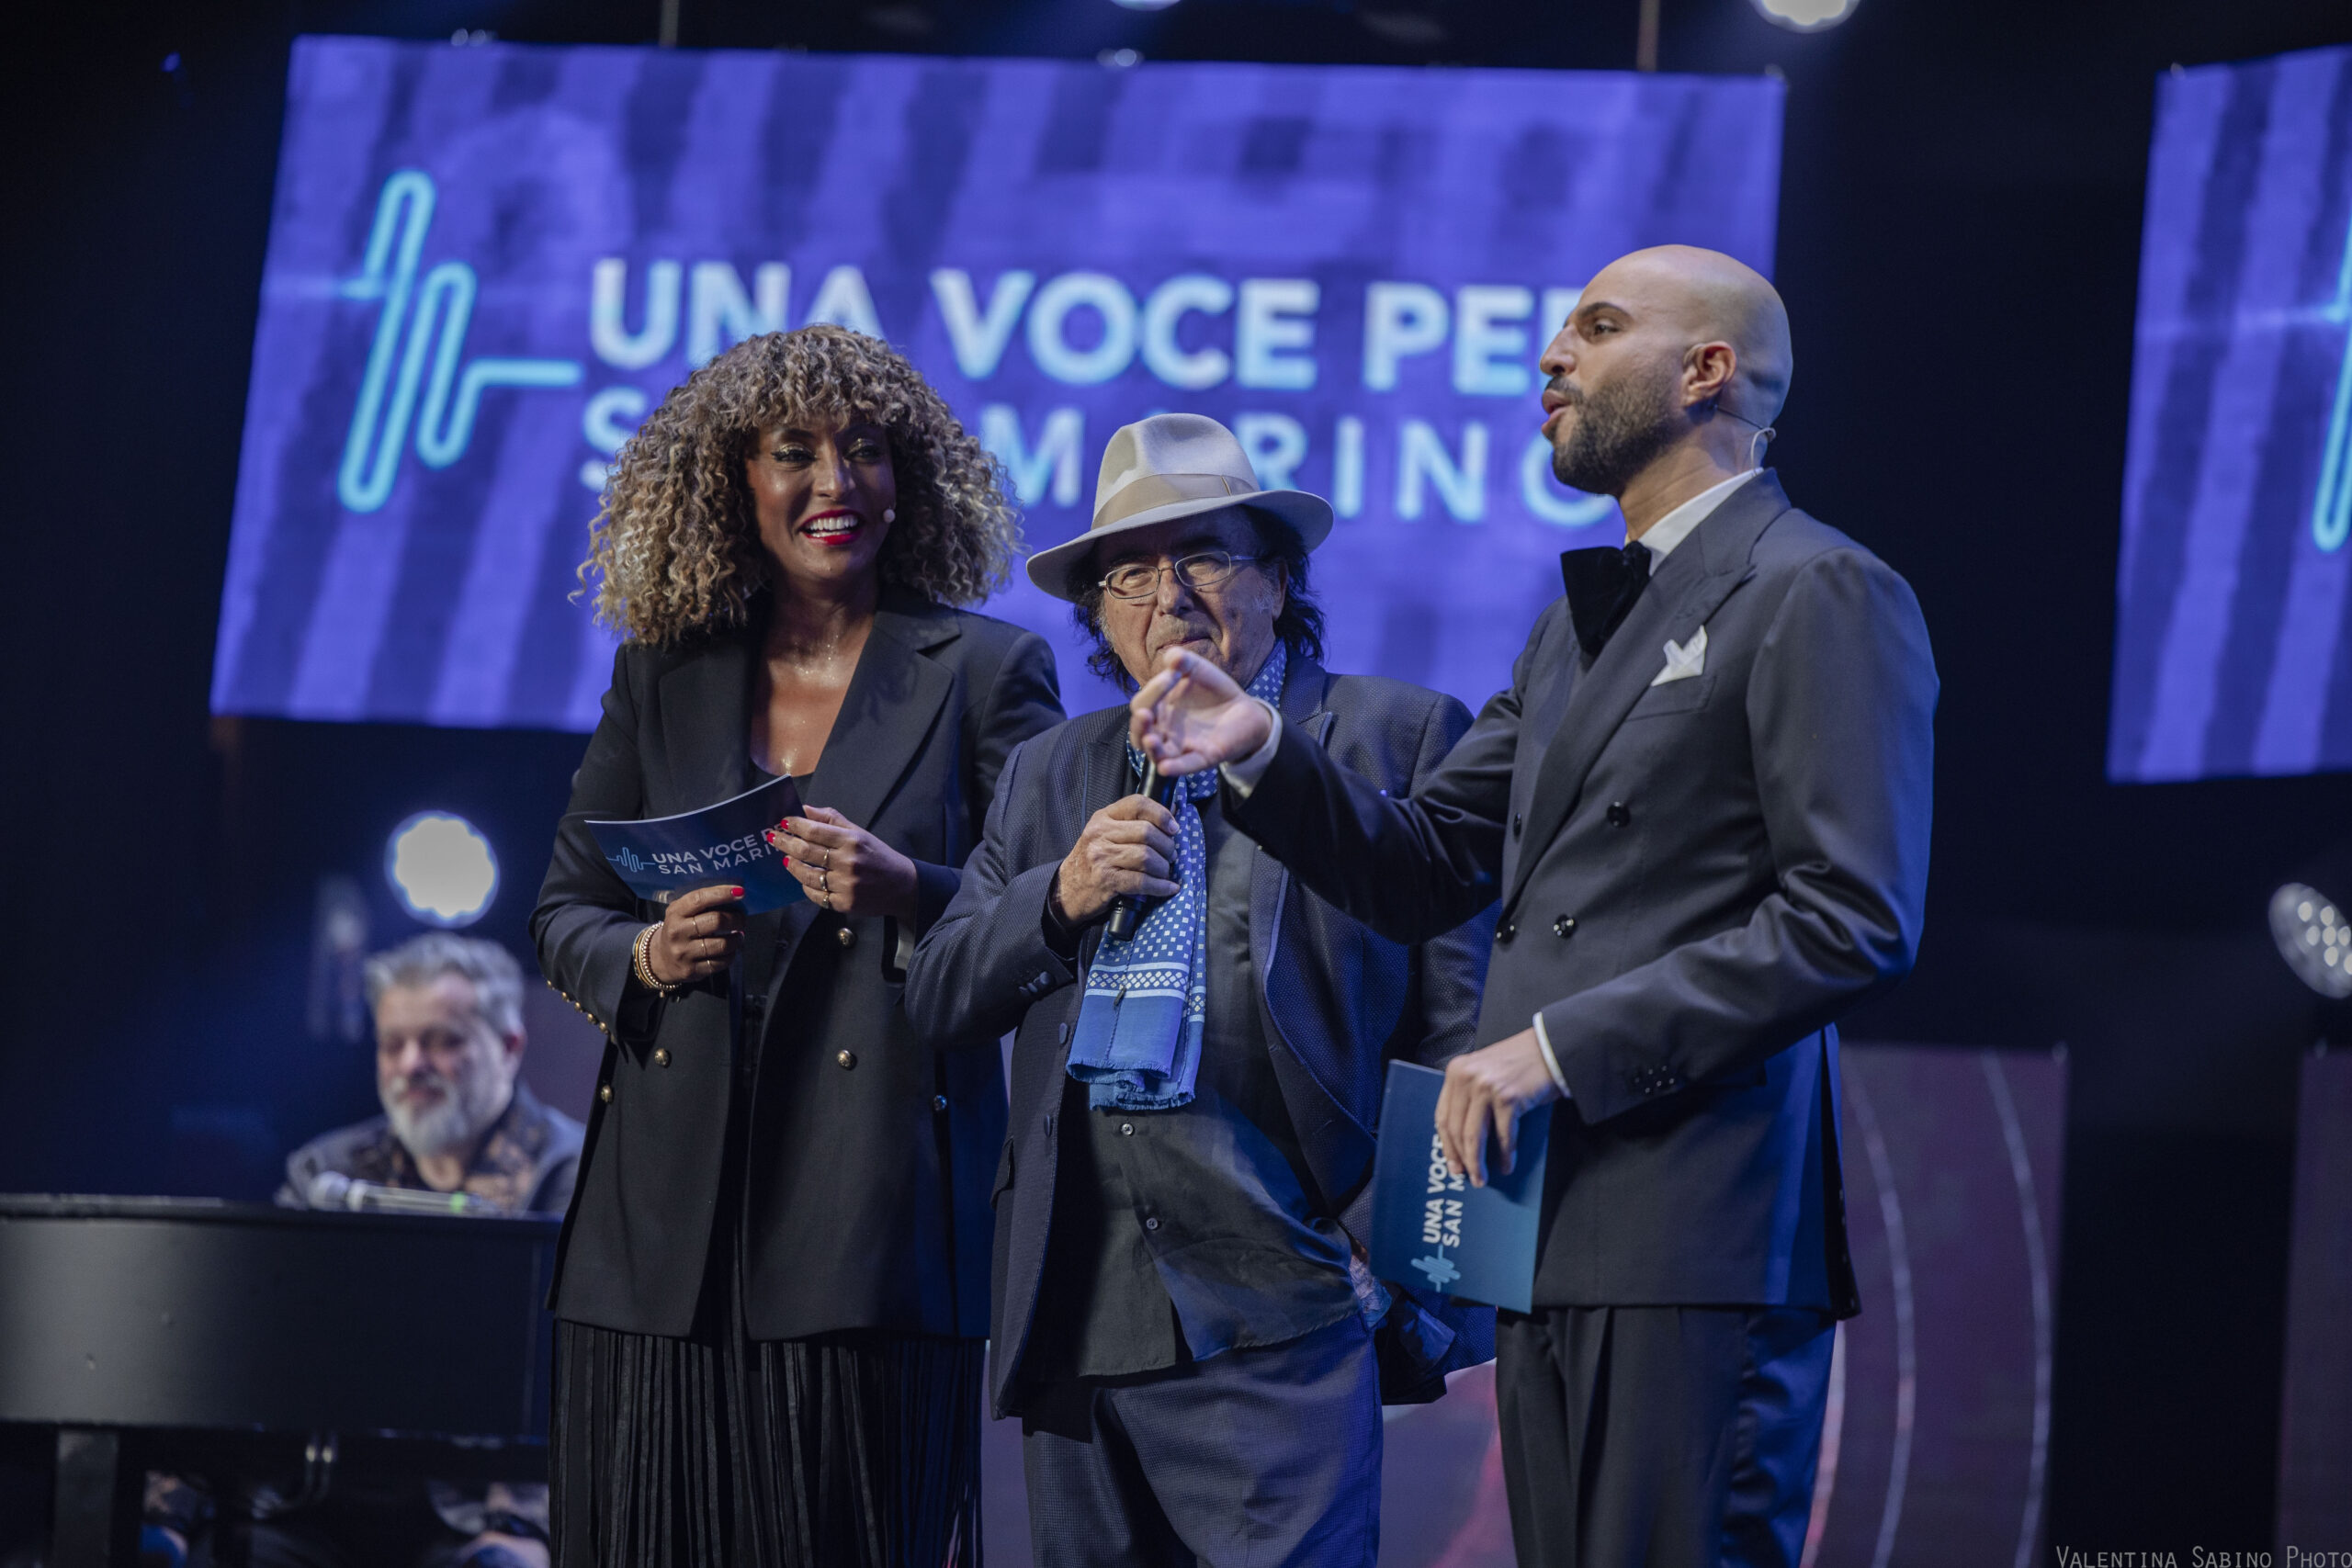 Una Voce per San Marino: il 25 febbraio al Teatro Nuovo a Dogana finalissima del festival che premia con l’accesso all’Eurovision Song Contest